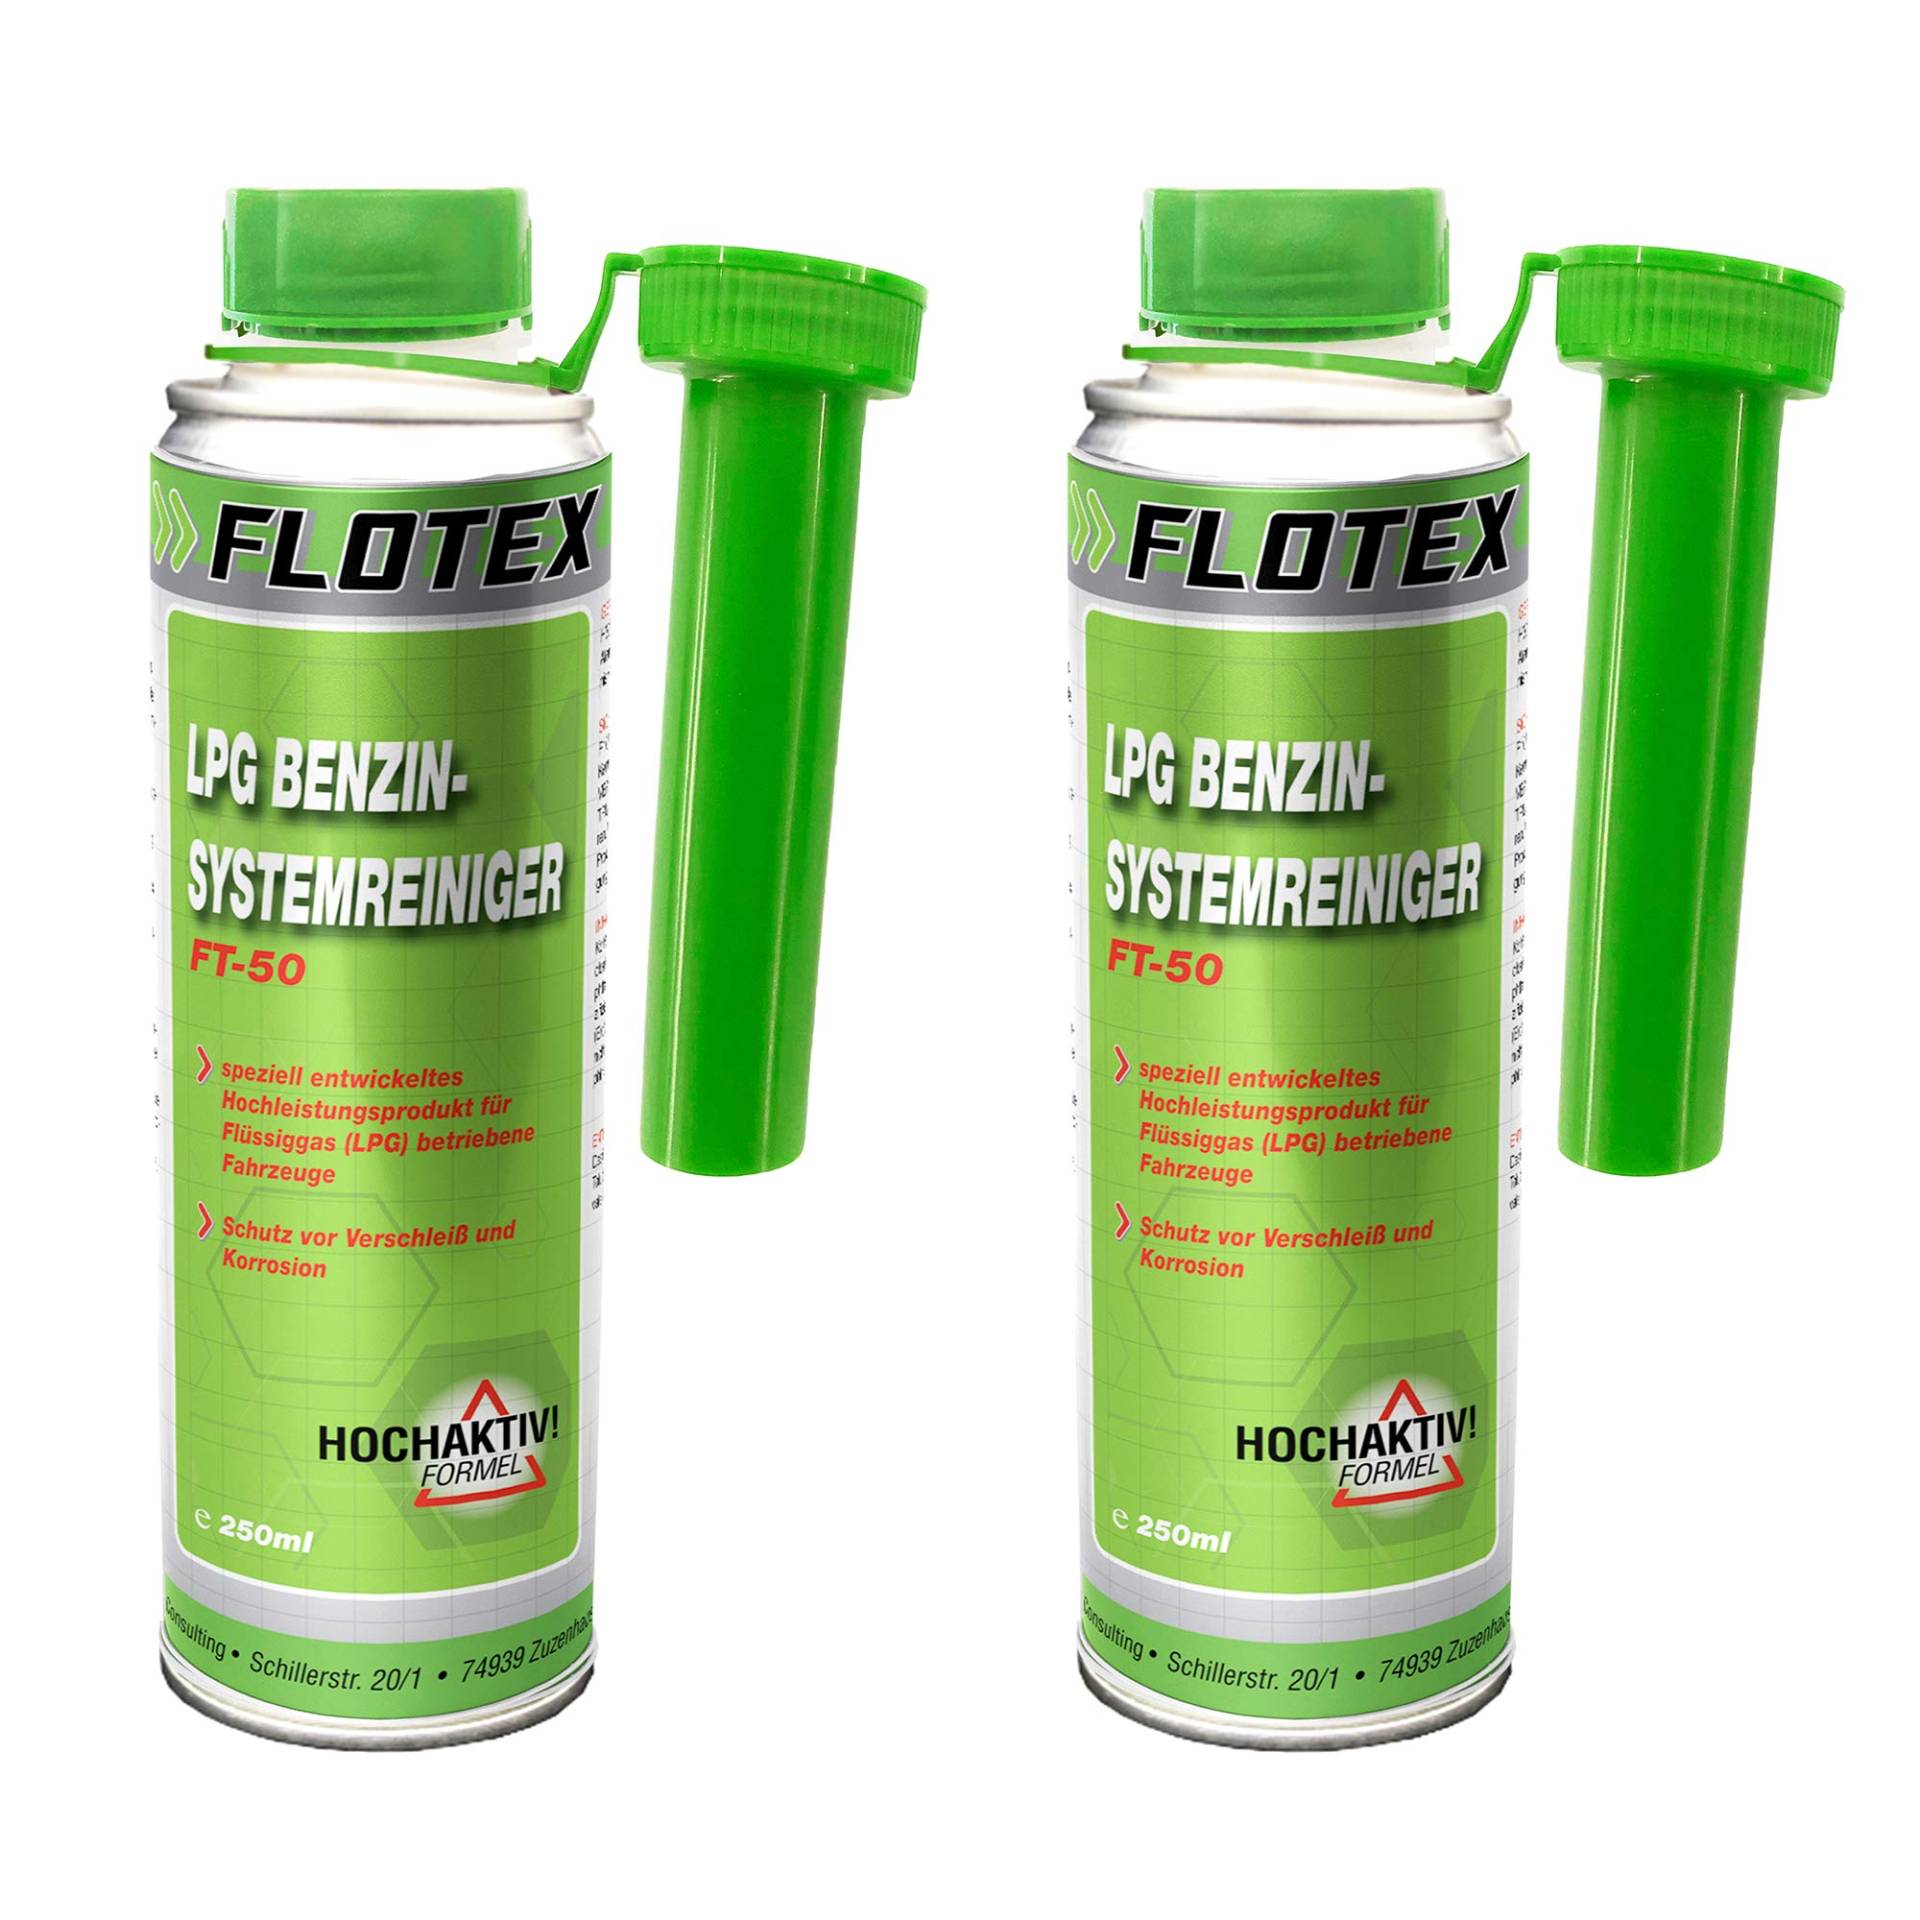 Flotex LPG Benzinsystemreiniger, 2 x 250ml Additiv Motor System Reiniger Benzin von Flotex